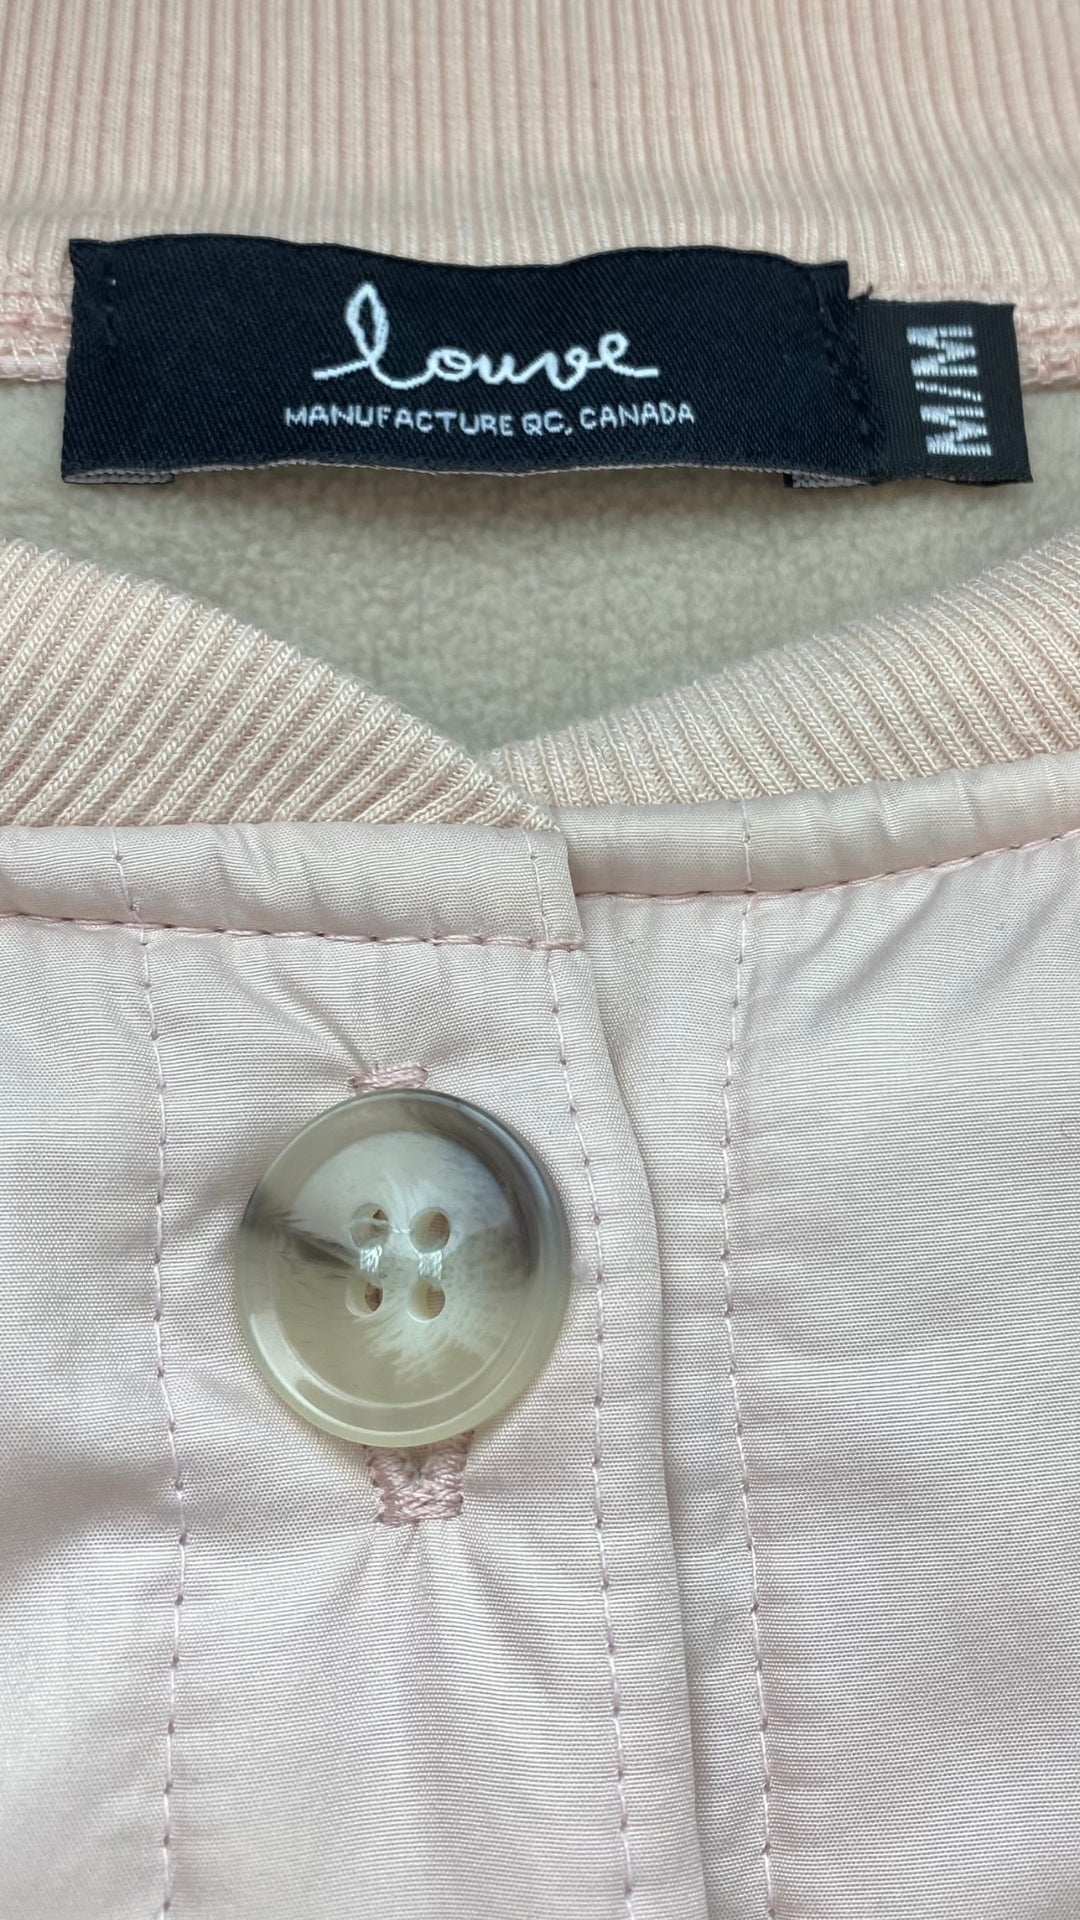 Veste matelassée boutonnée rose Louve, taille medium. Vue de l'étiquette de marque et taille.